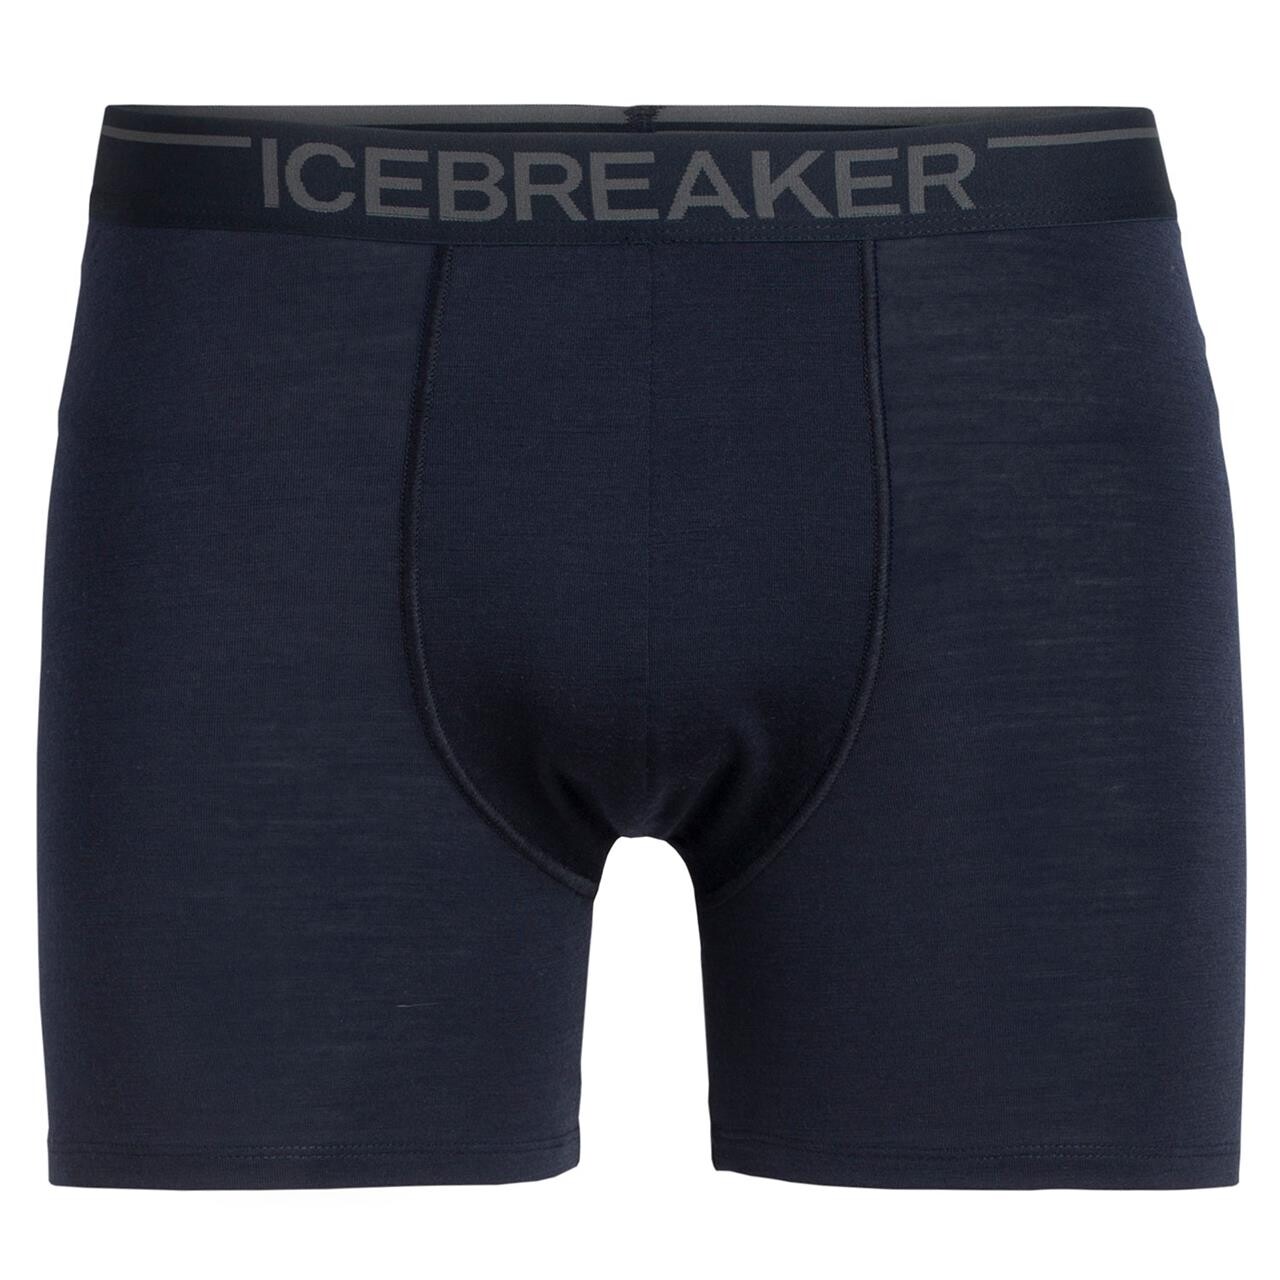 Billede af Icebreaker Mens Anatomica Boxers (Blå (MIDNIGHT NAVY) X-large)